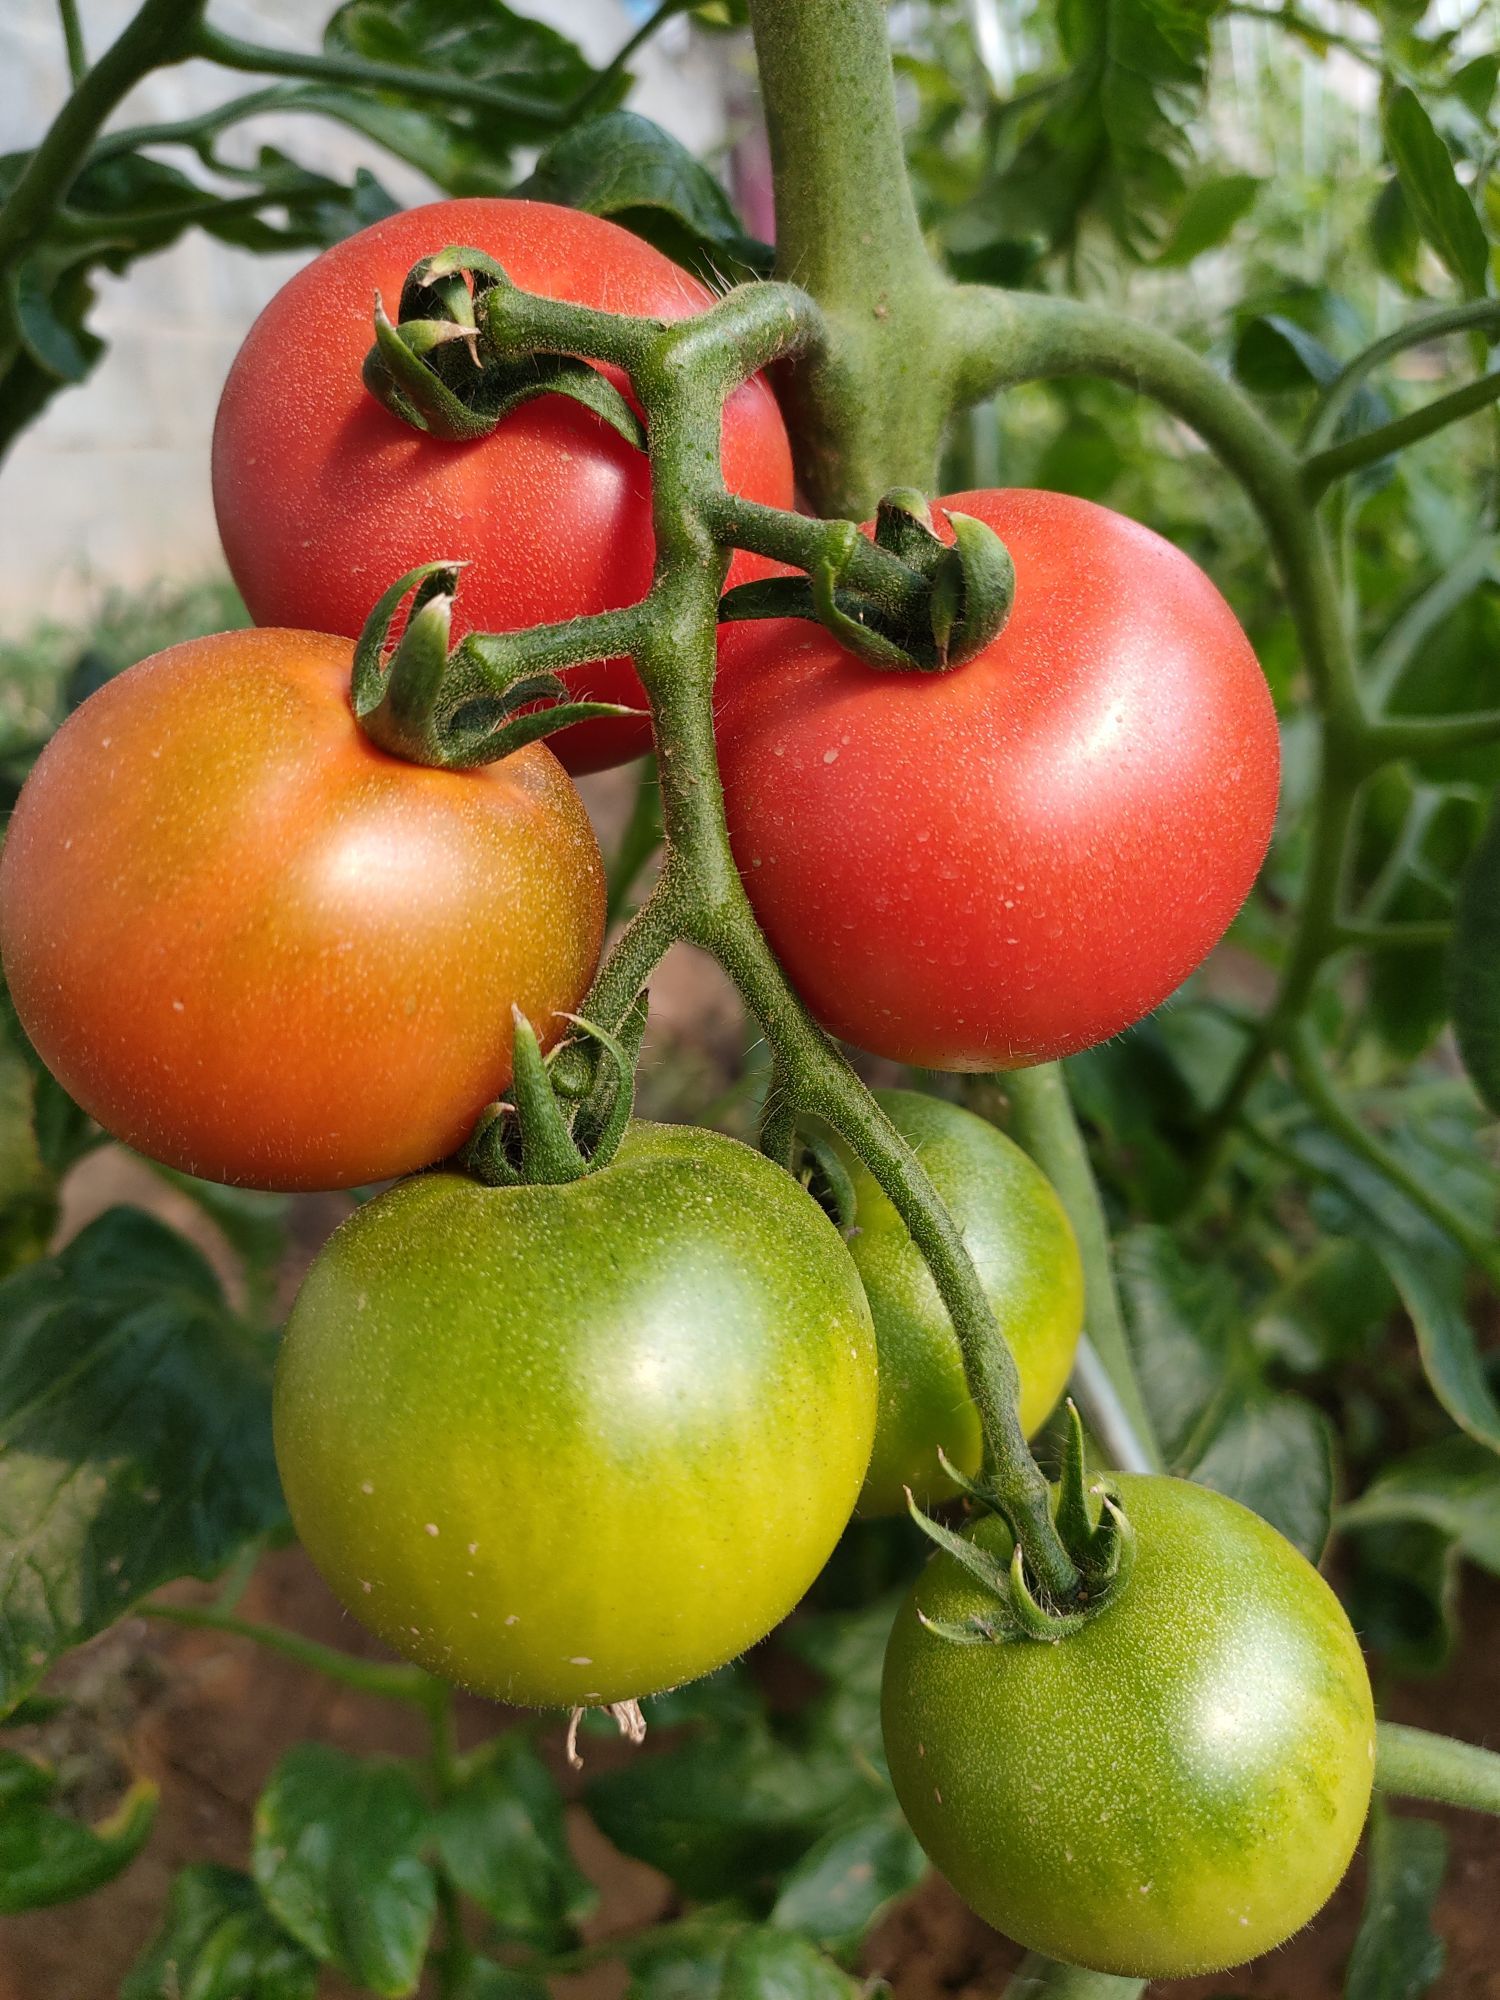 番茄春季采后管理工作很重要 专家给您提出指导意见